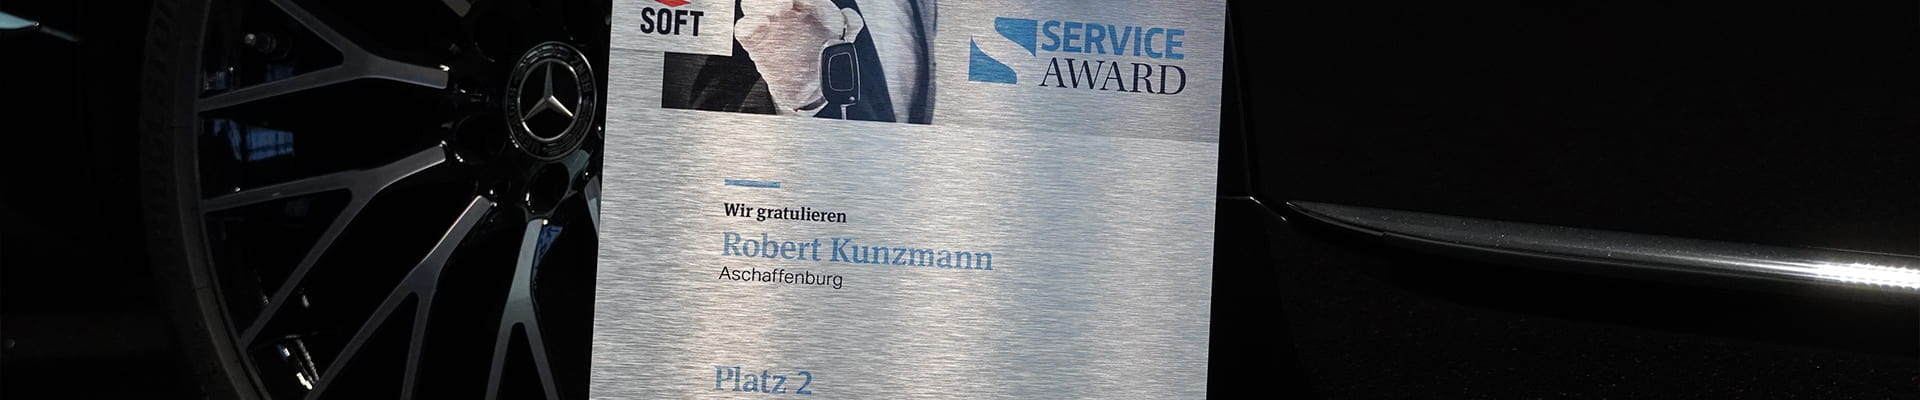 Service Award 2021 Platz zwei für Kunzmann